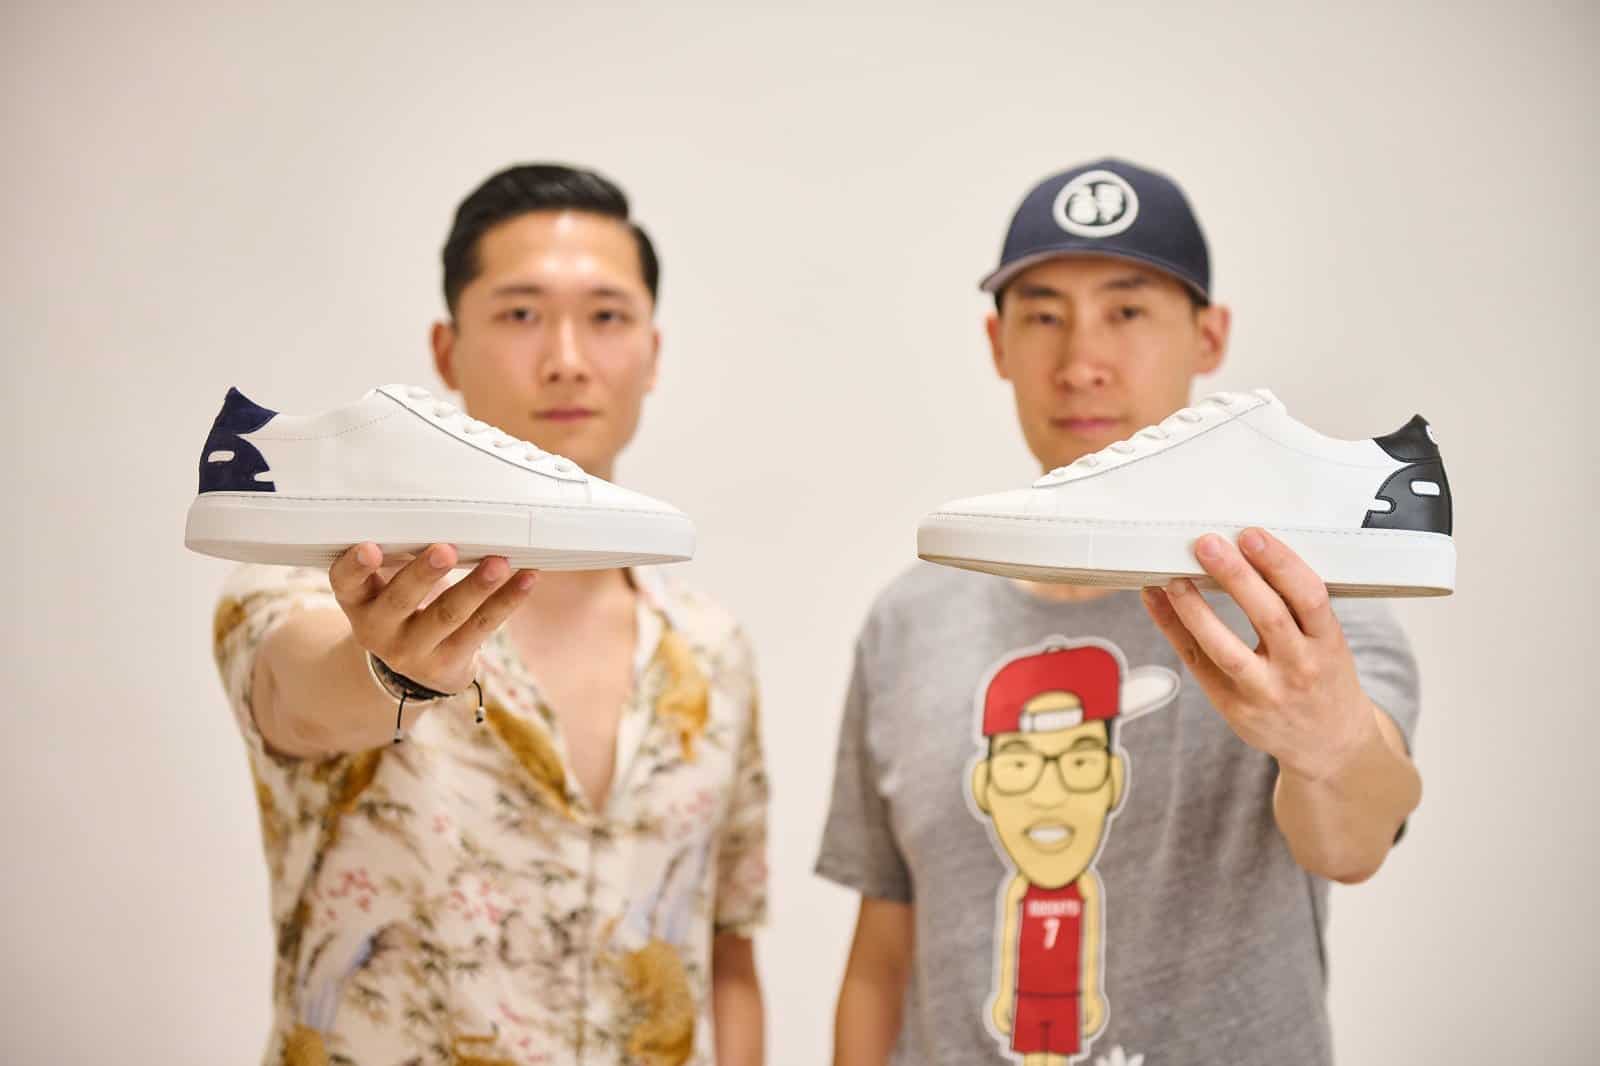 Permira's Golden Goose Sneaker Brand Is Buying Its Top Supplier - Bloomberg